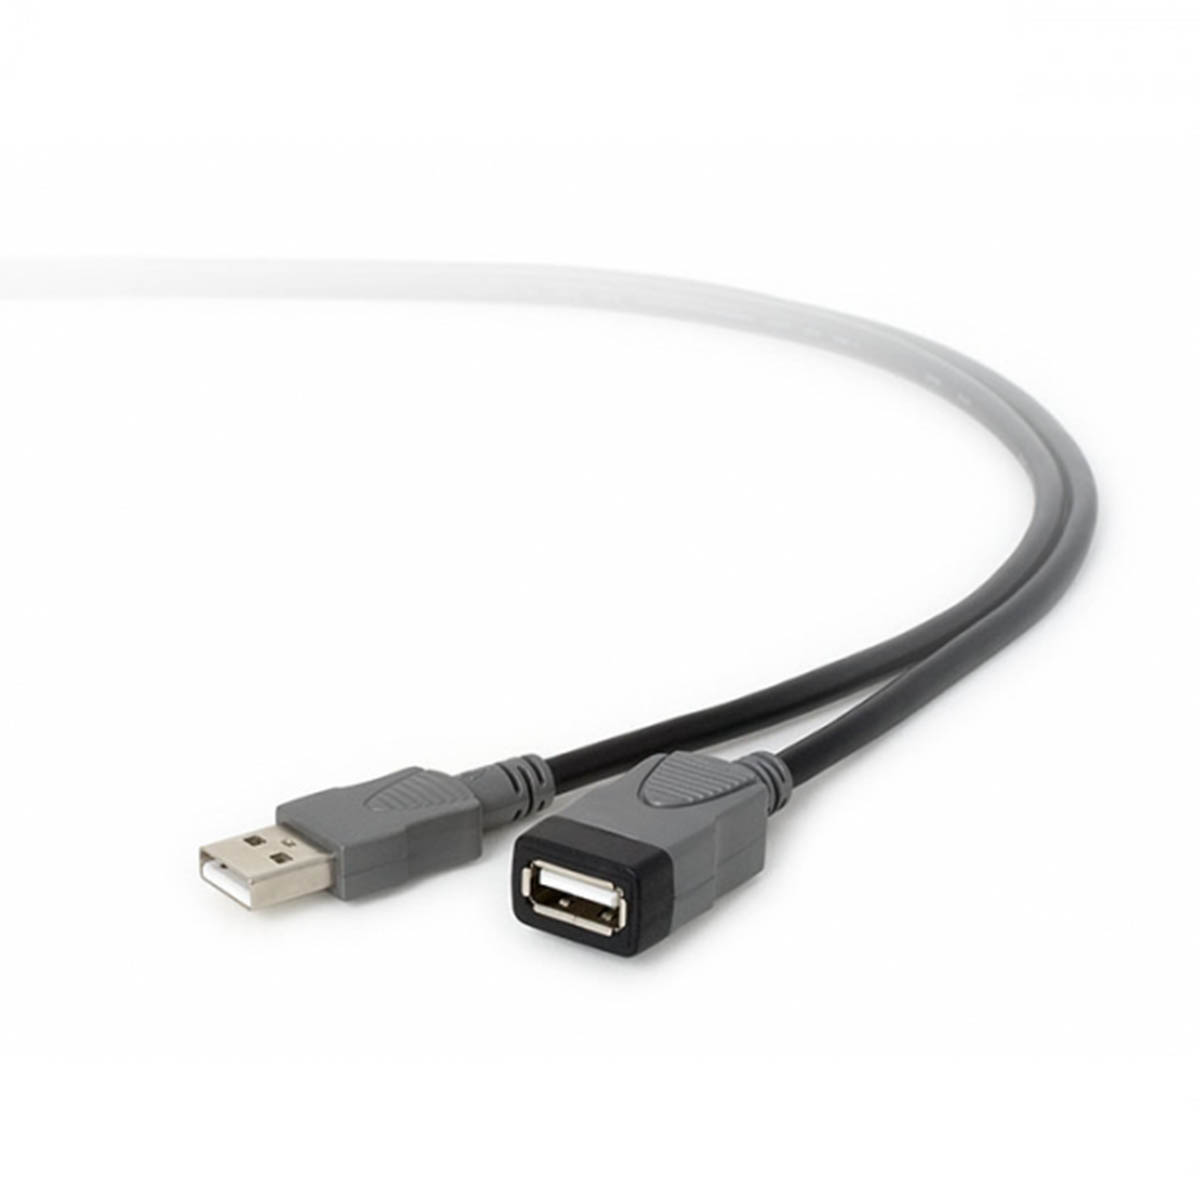 Удлинитель USB 2.0 AM-AF DL23, длина 1.5 метра, цвет черный